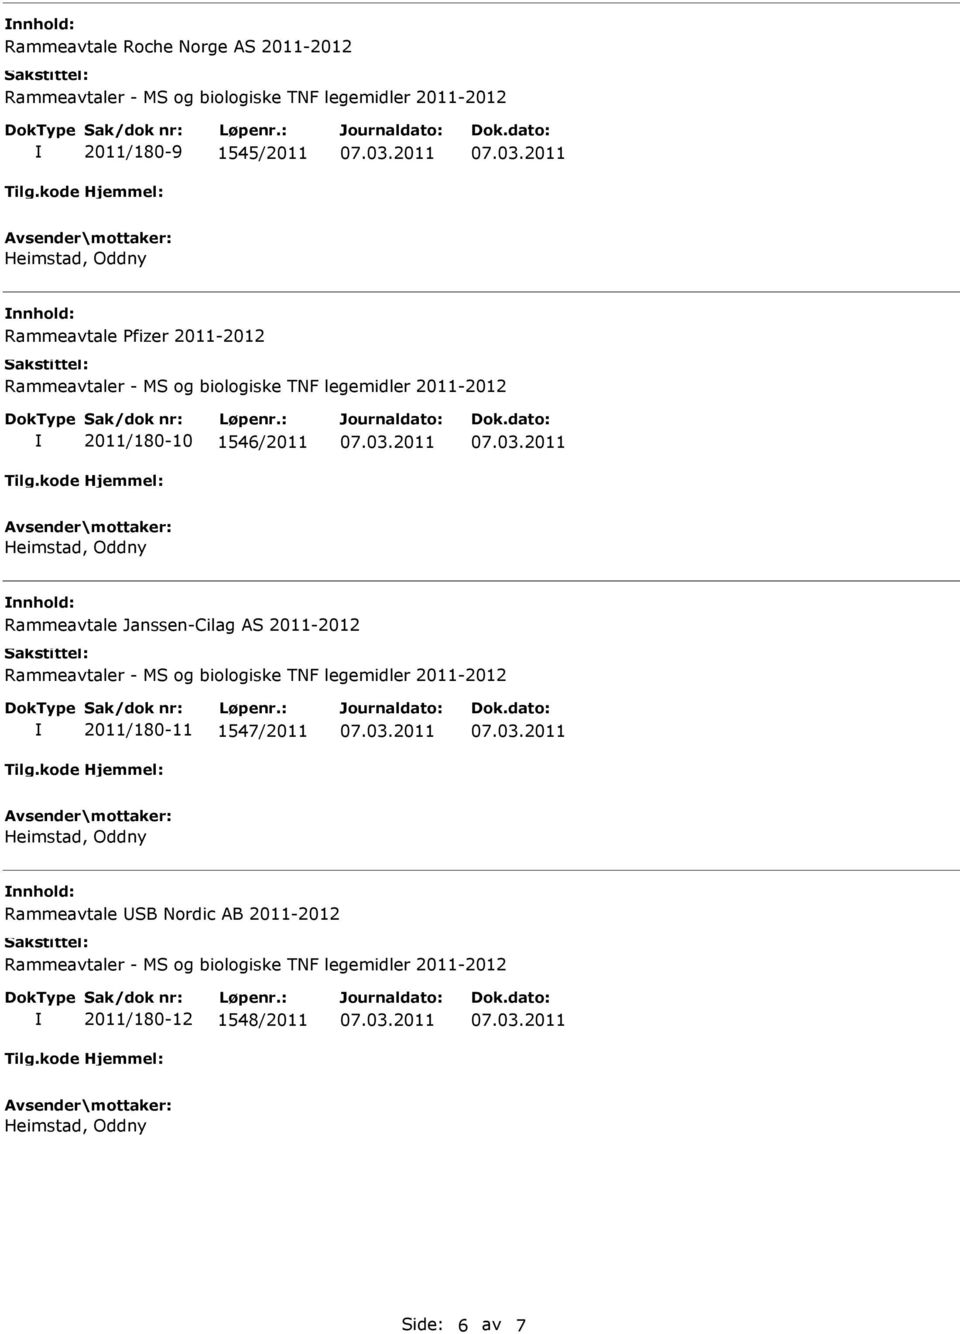 Rammeavtale Janssen-Cilag AS 2011-2012 2011/180-11 1547/2011